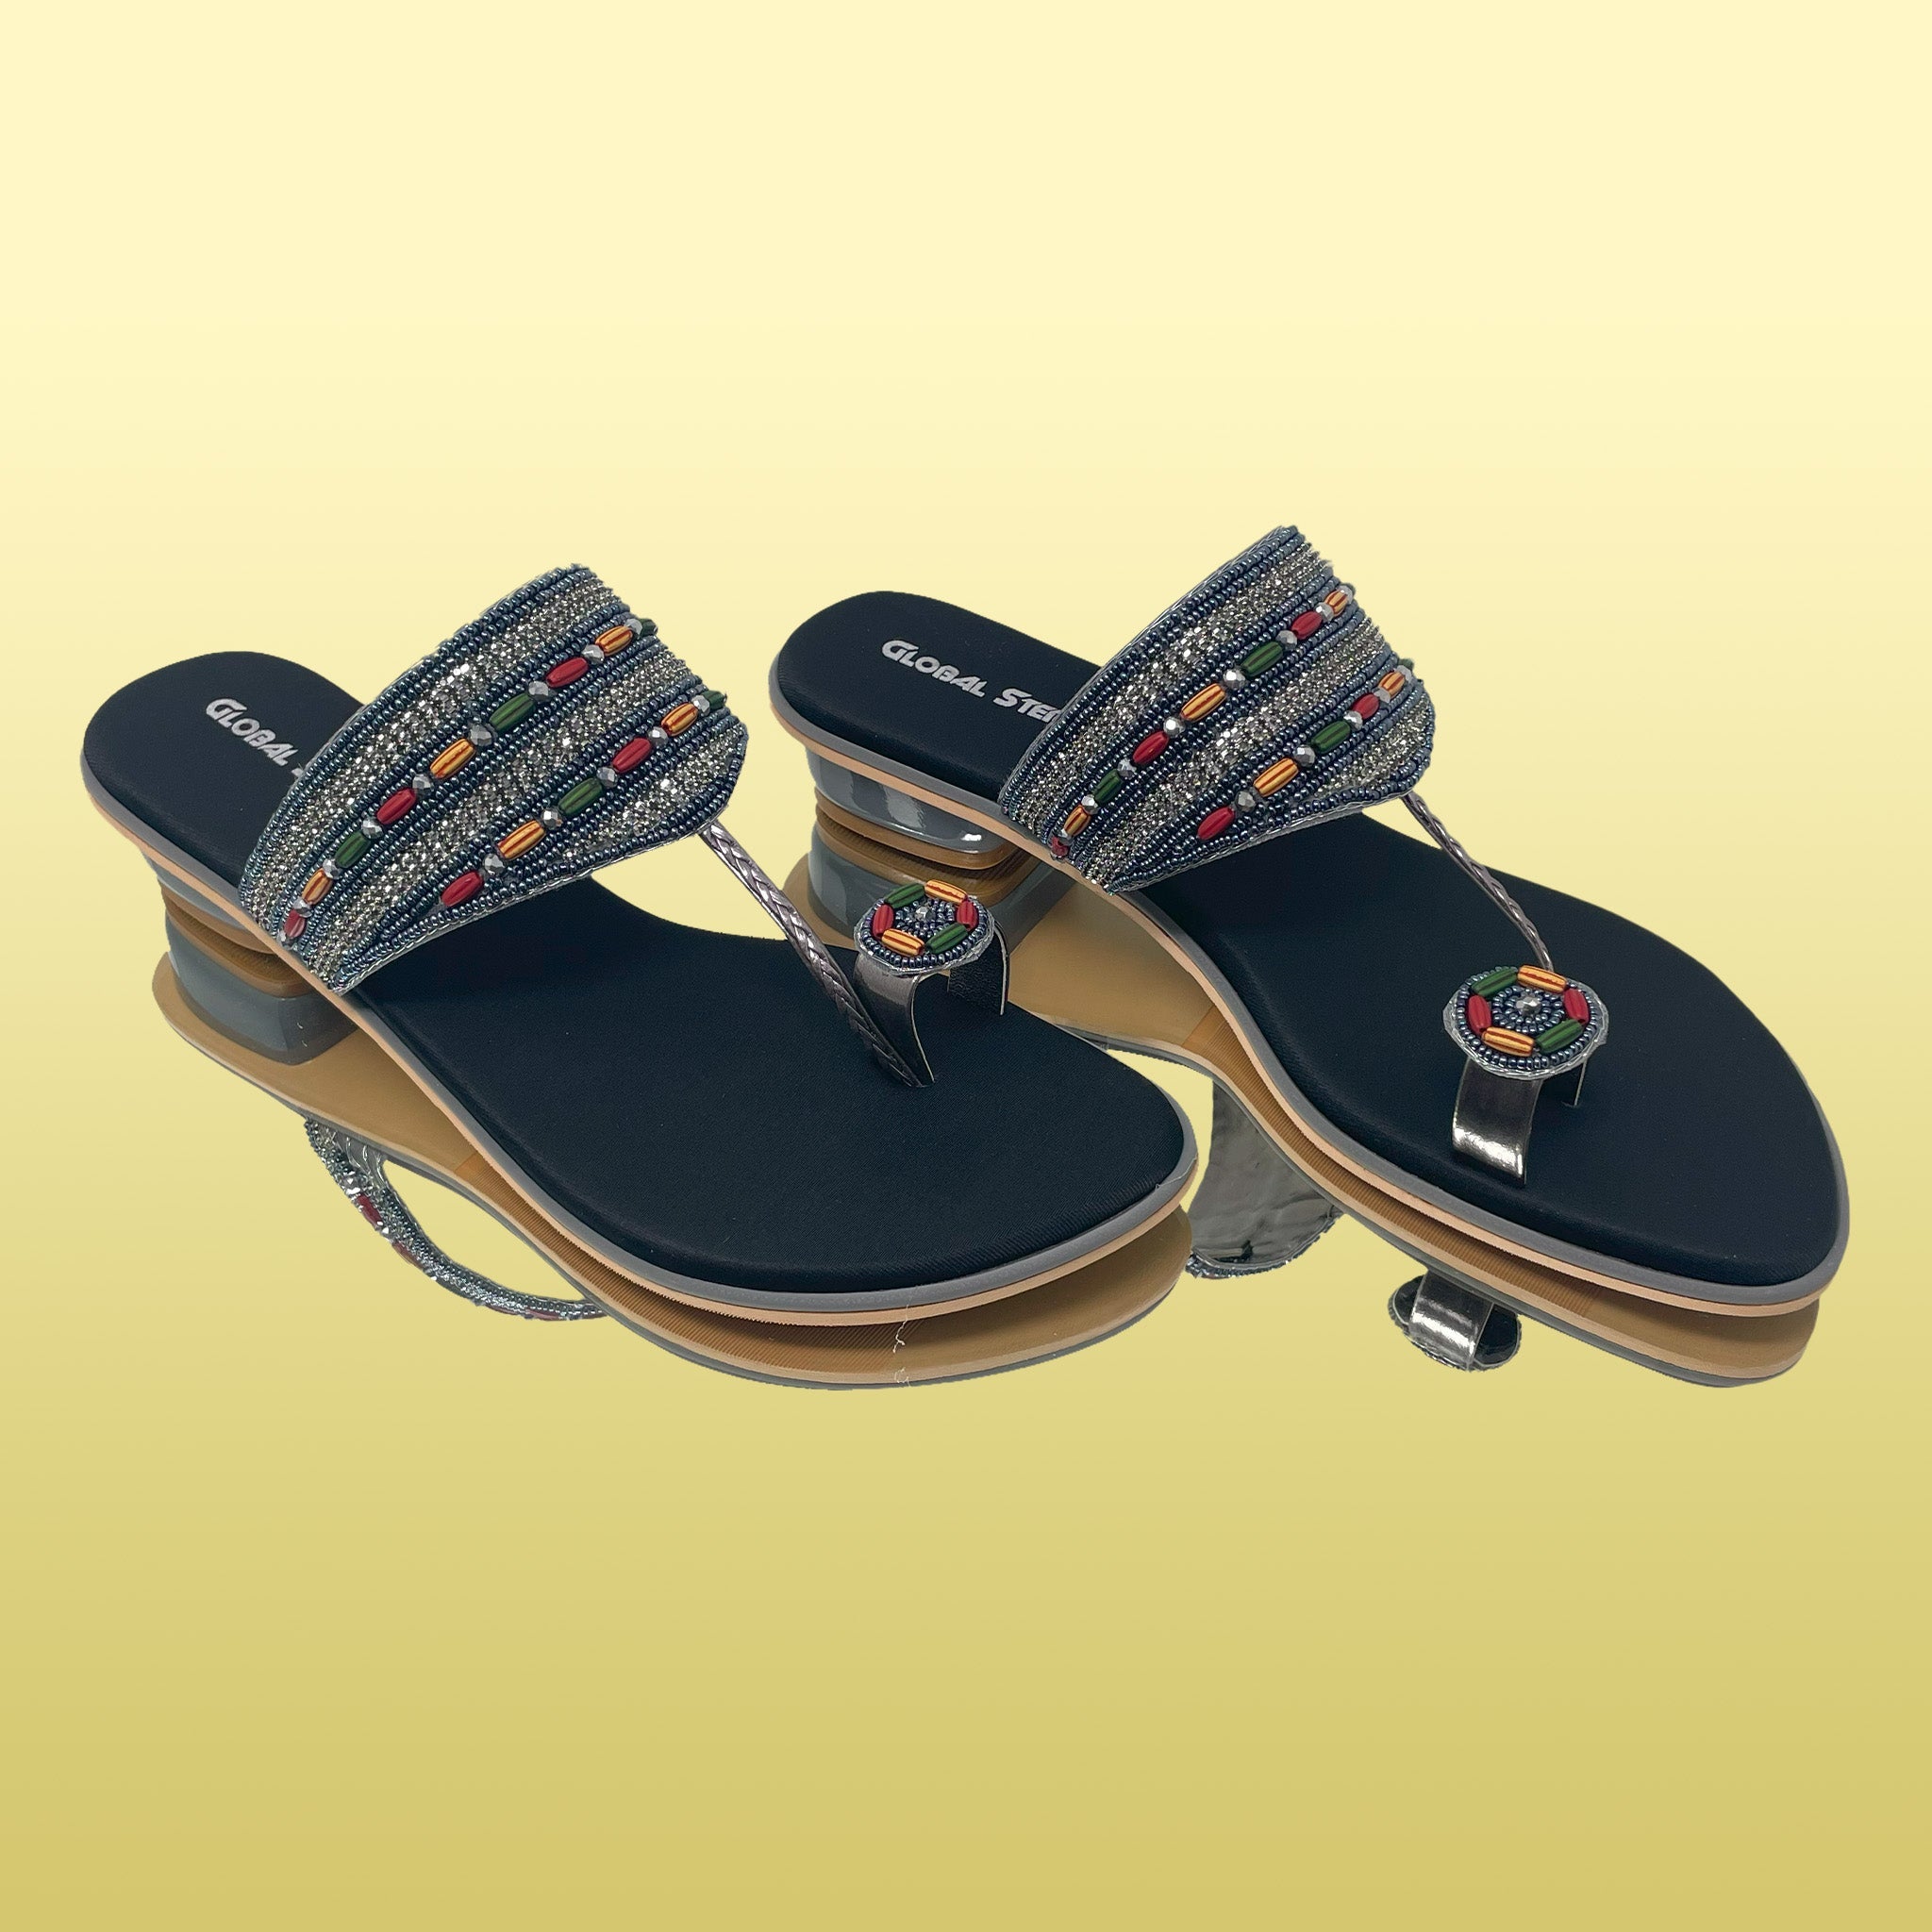 Black Zari Embellished Toe-ring Heels - GlobalStep - Heels - 36